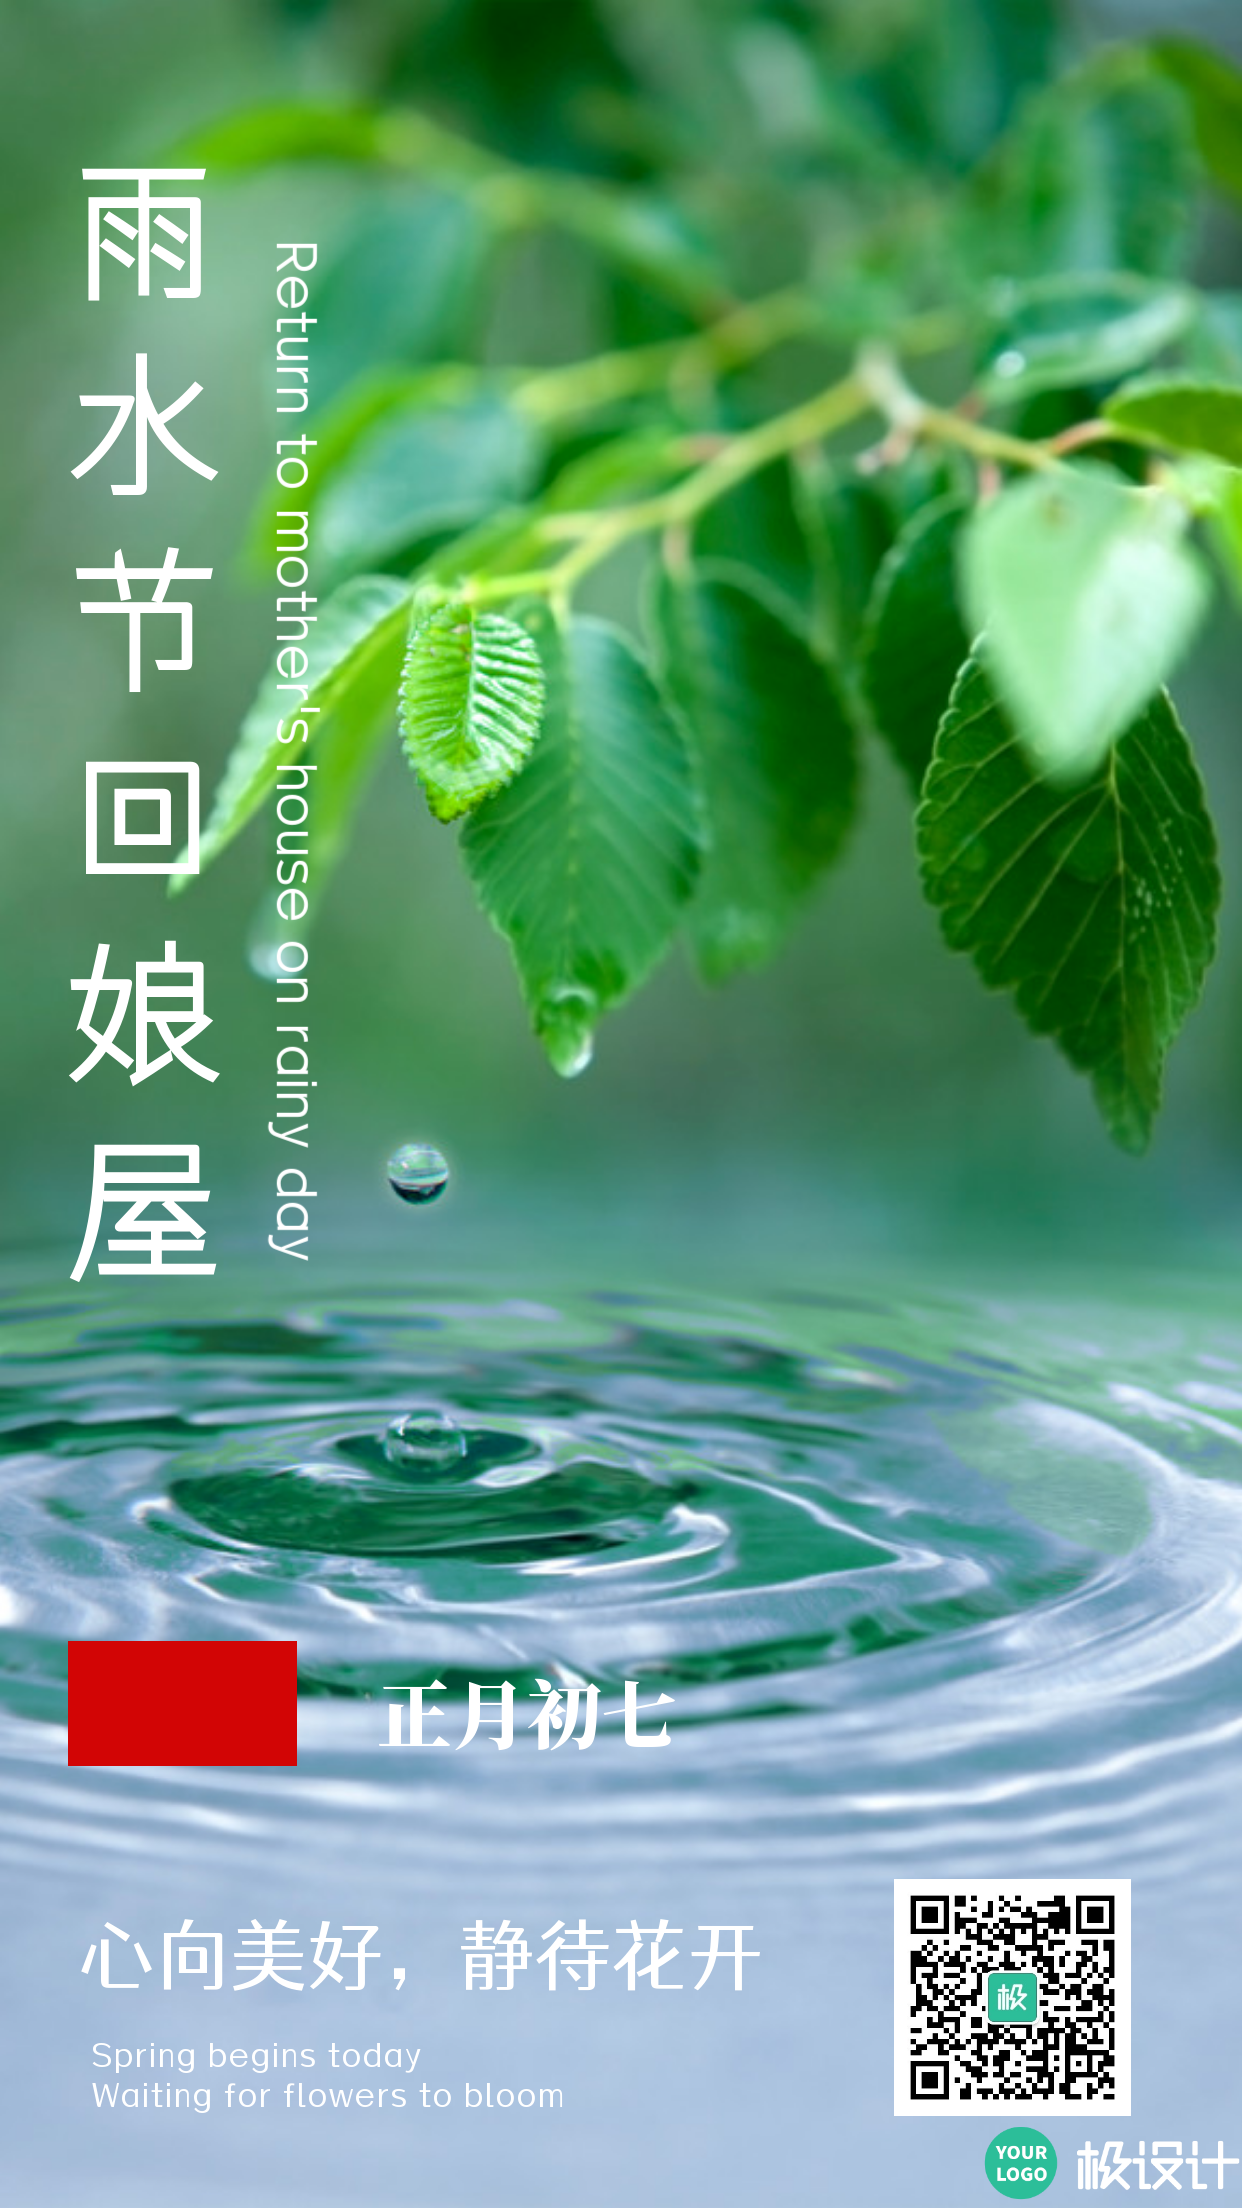 简约风格二十四节气雨水习俗宣传手机海报